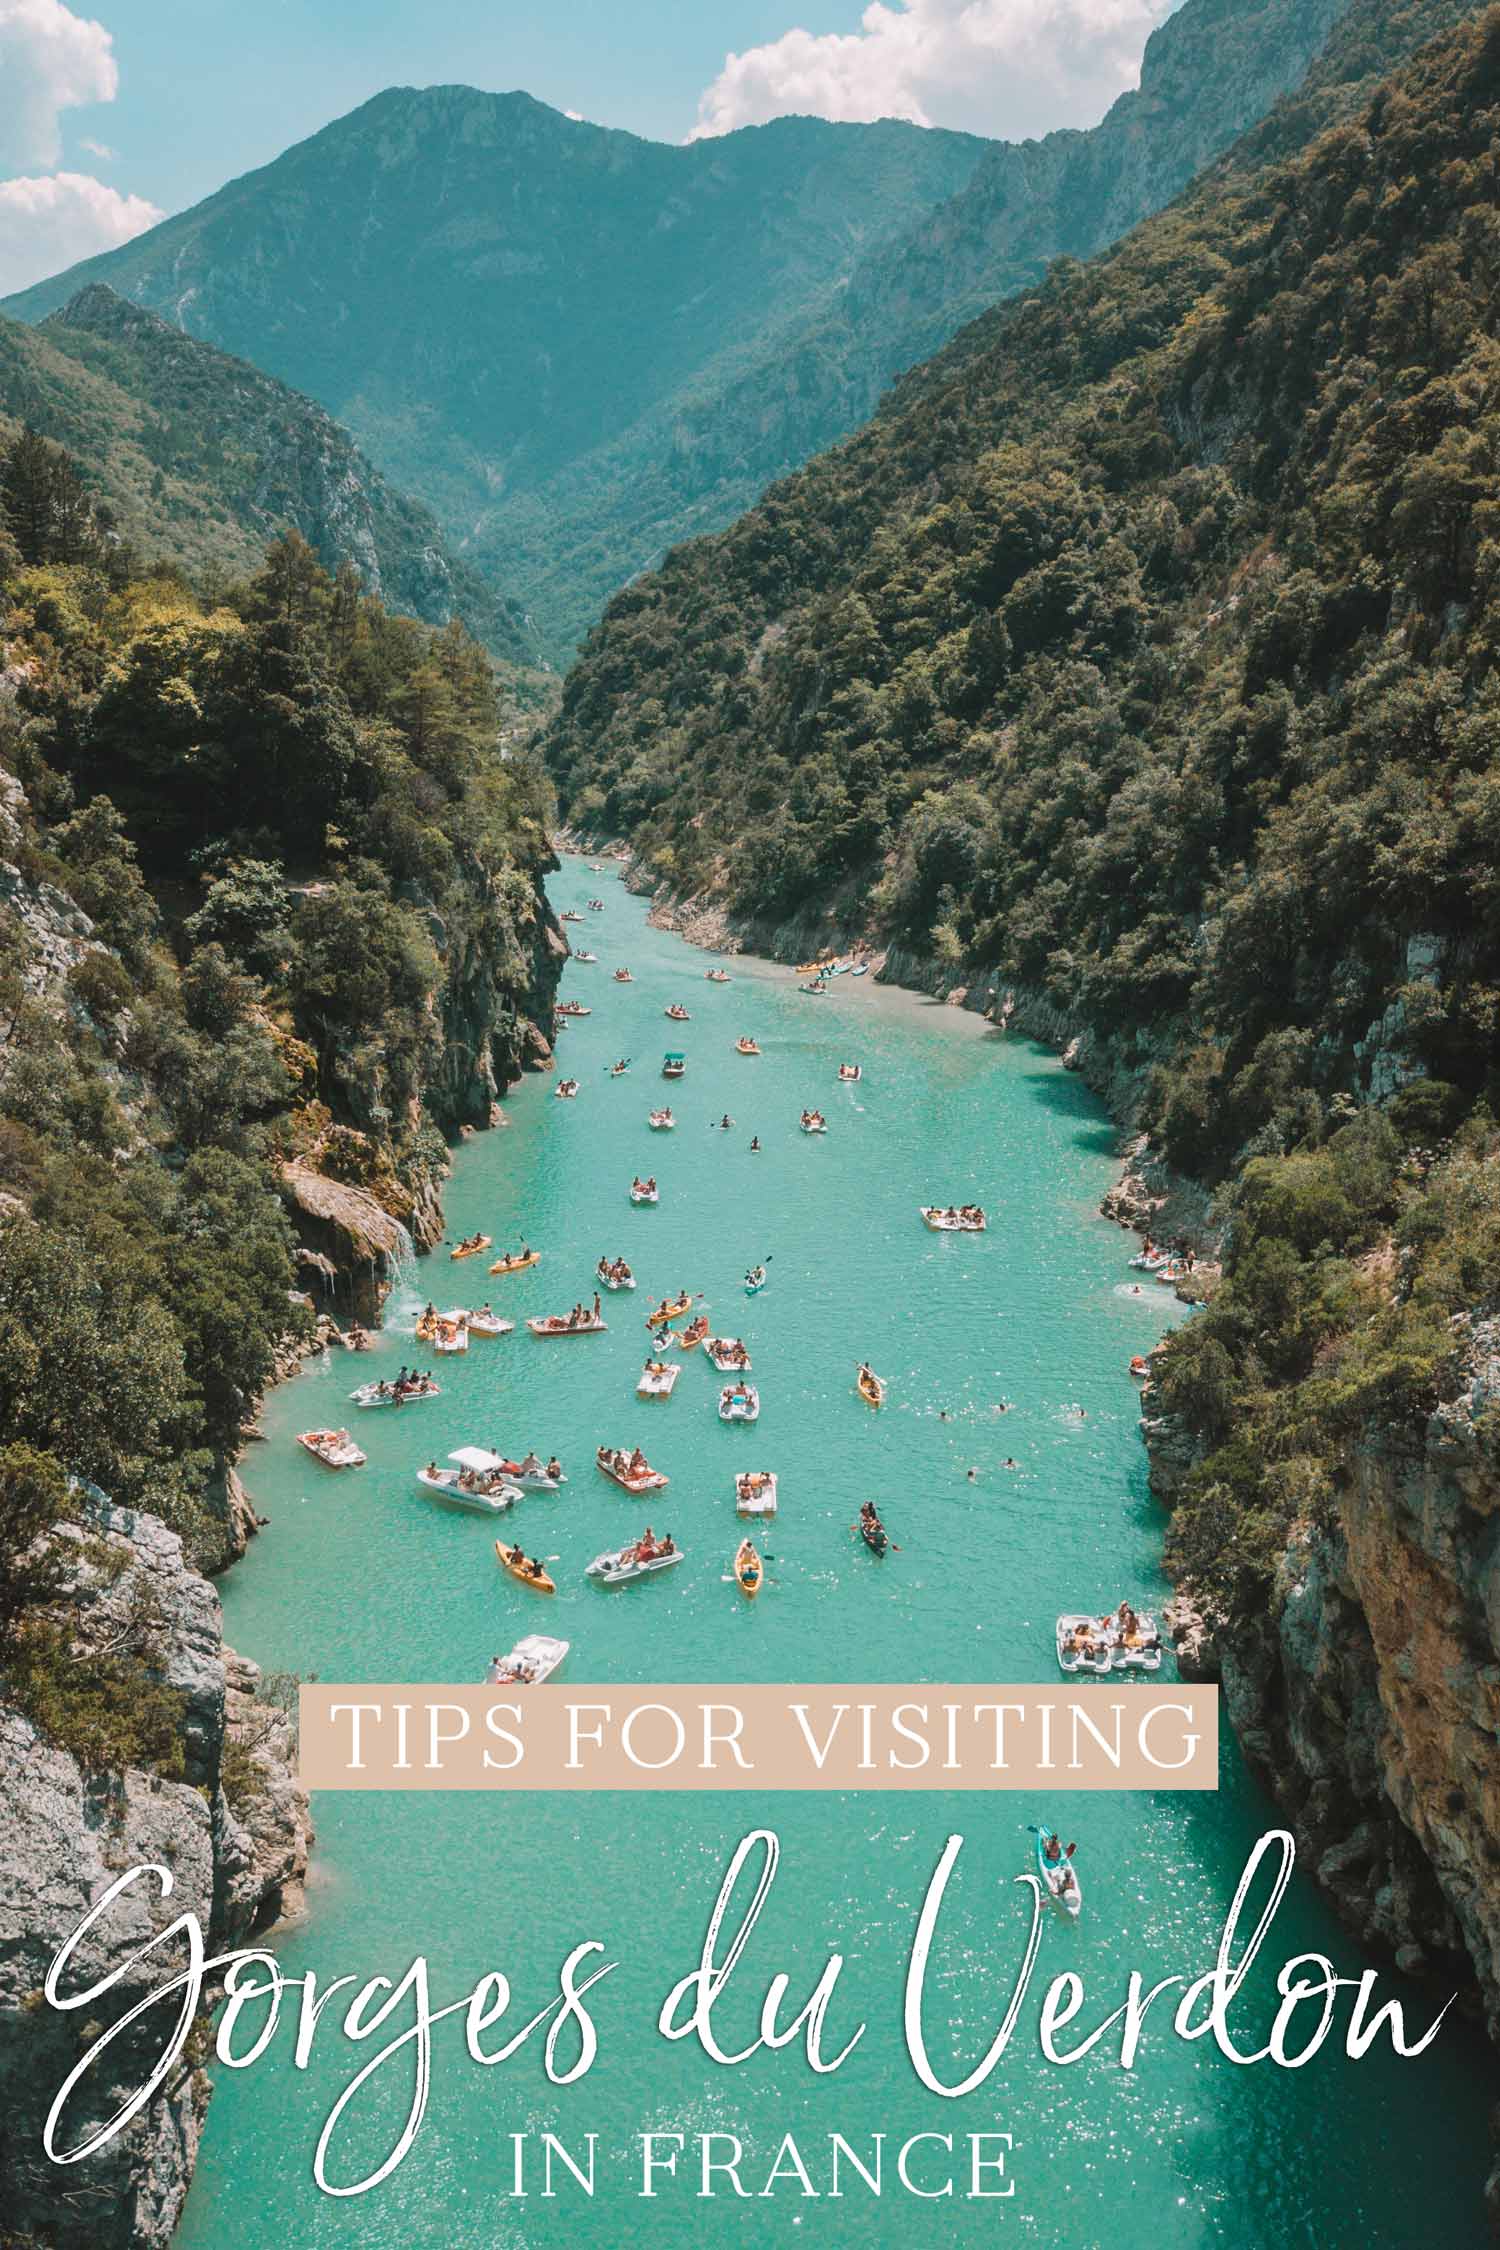 Tips for Visiting Gorges du Verdon in France